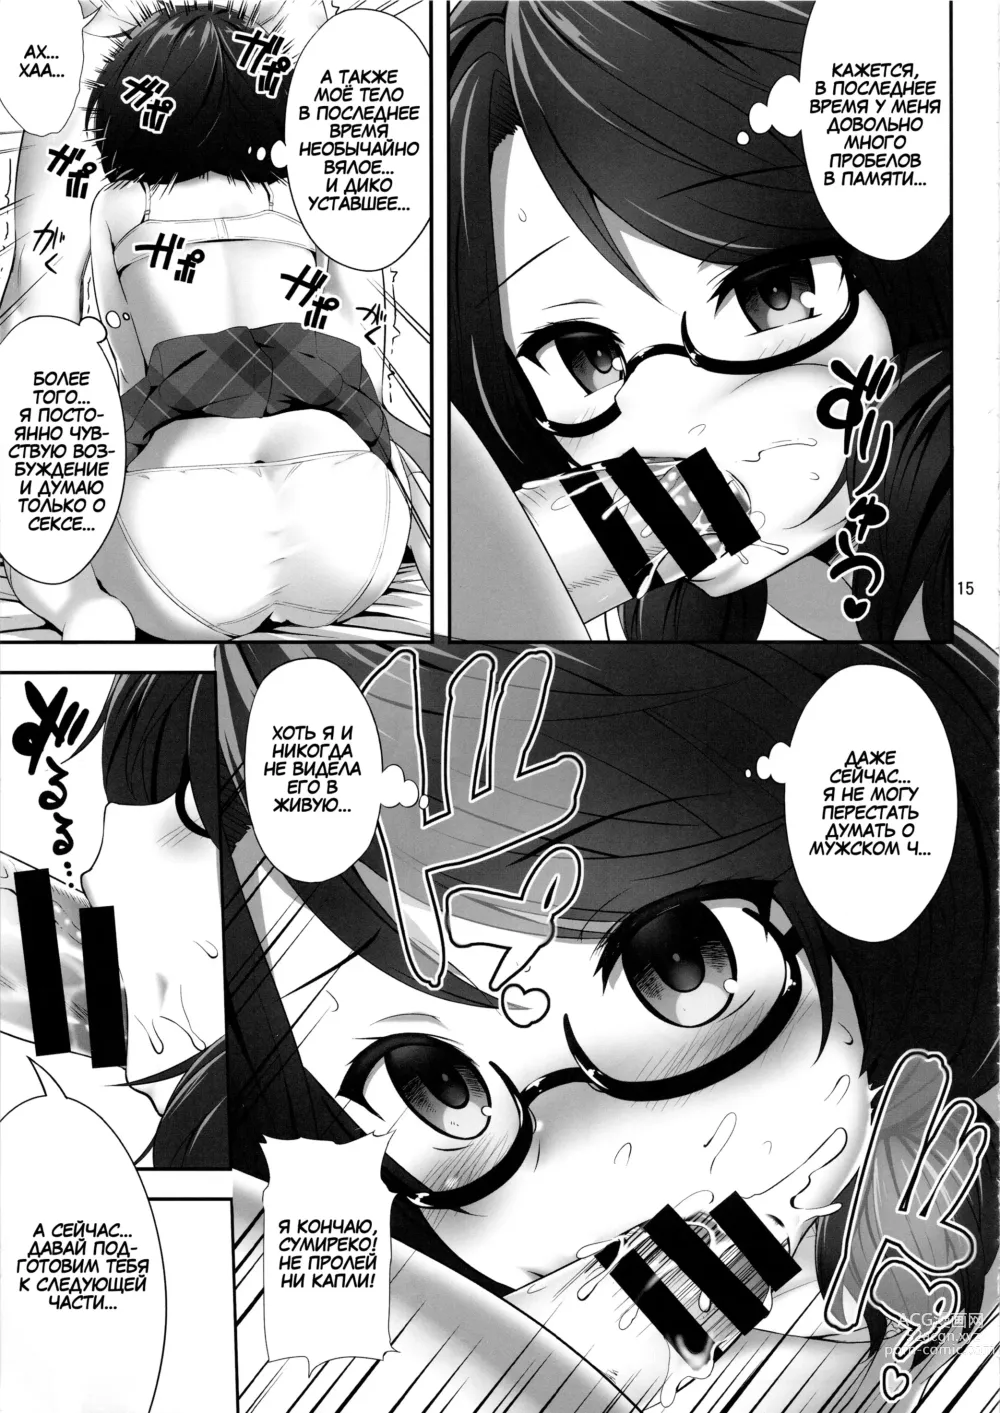 Page 14 of doujinshi Usami Sumireko Saiminbon 2